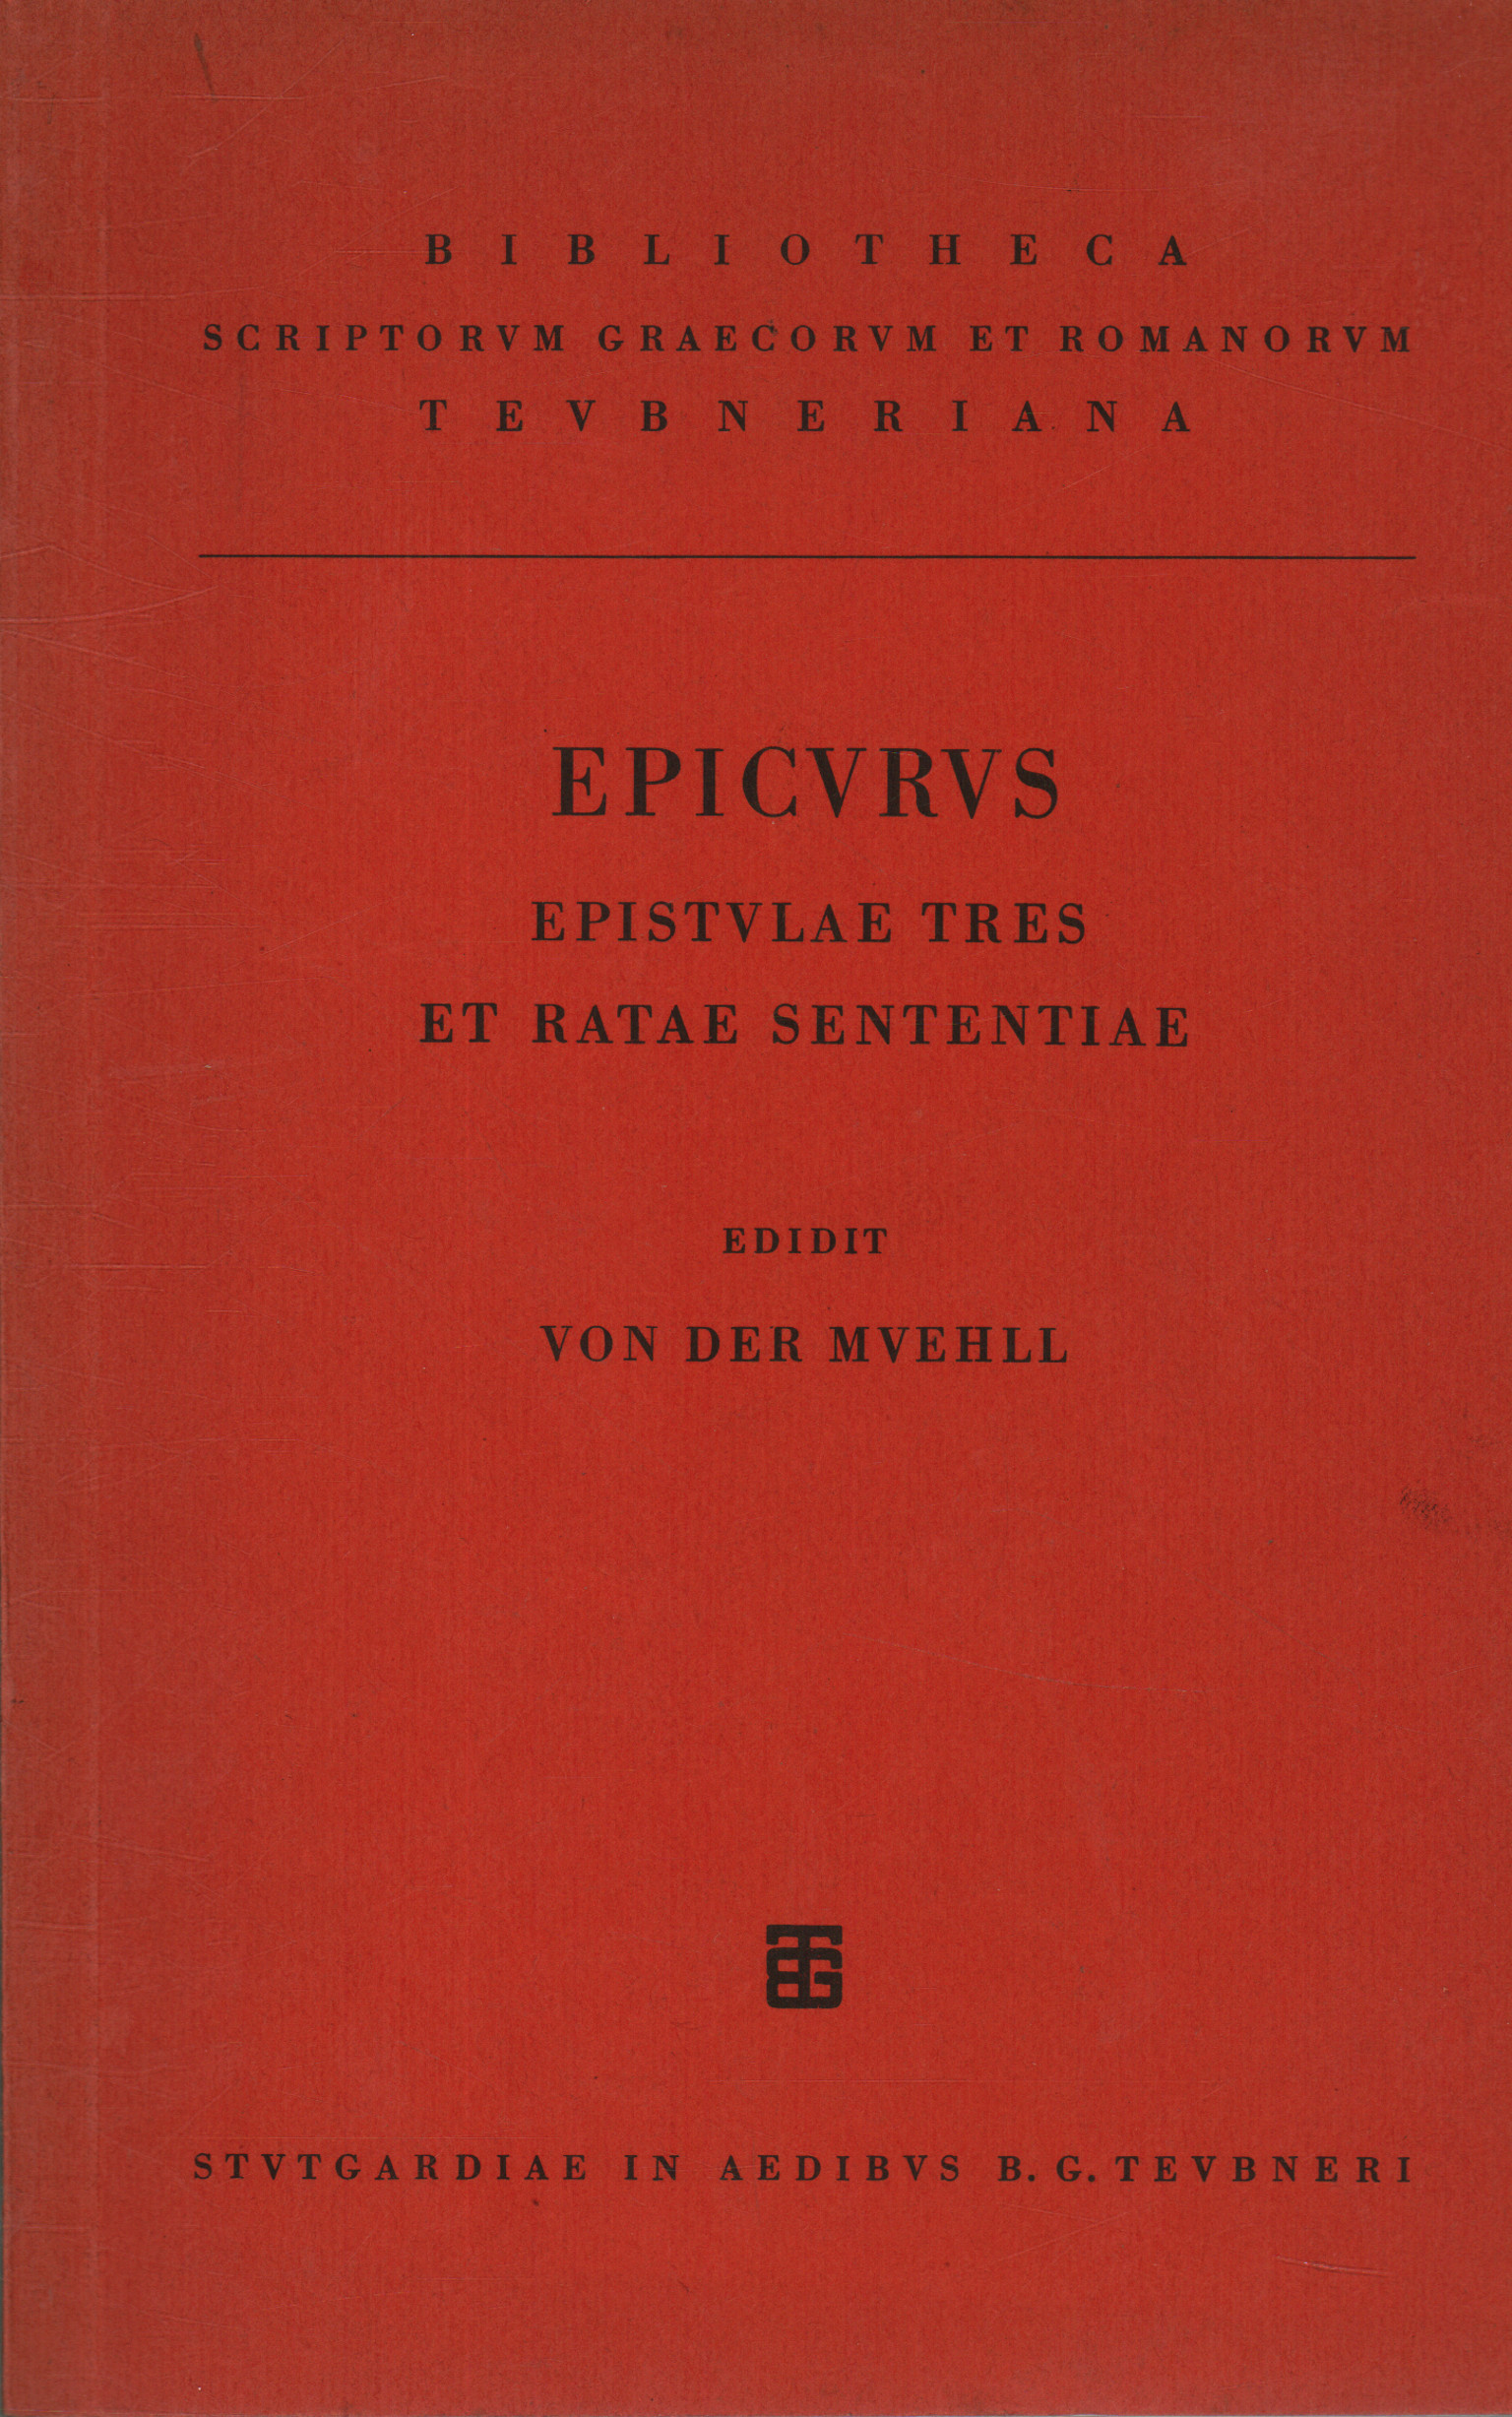 Epicvrvs Epistvlae tres et ratae sententiae, Von der Mvehll